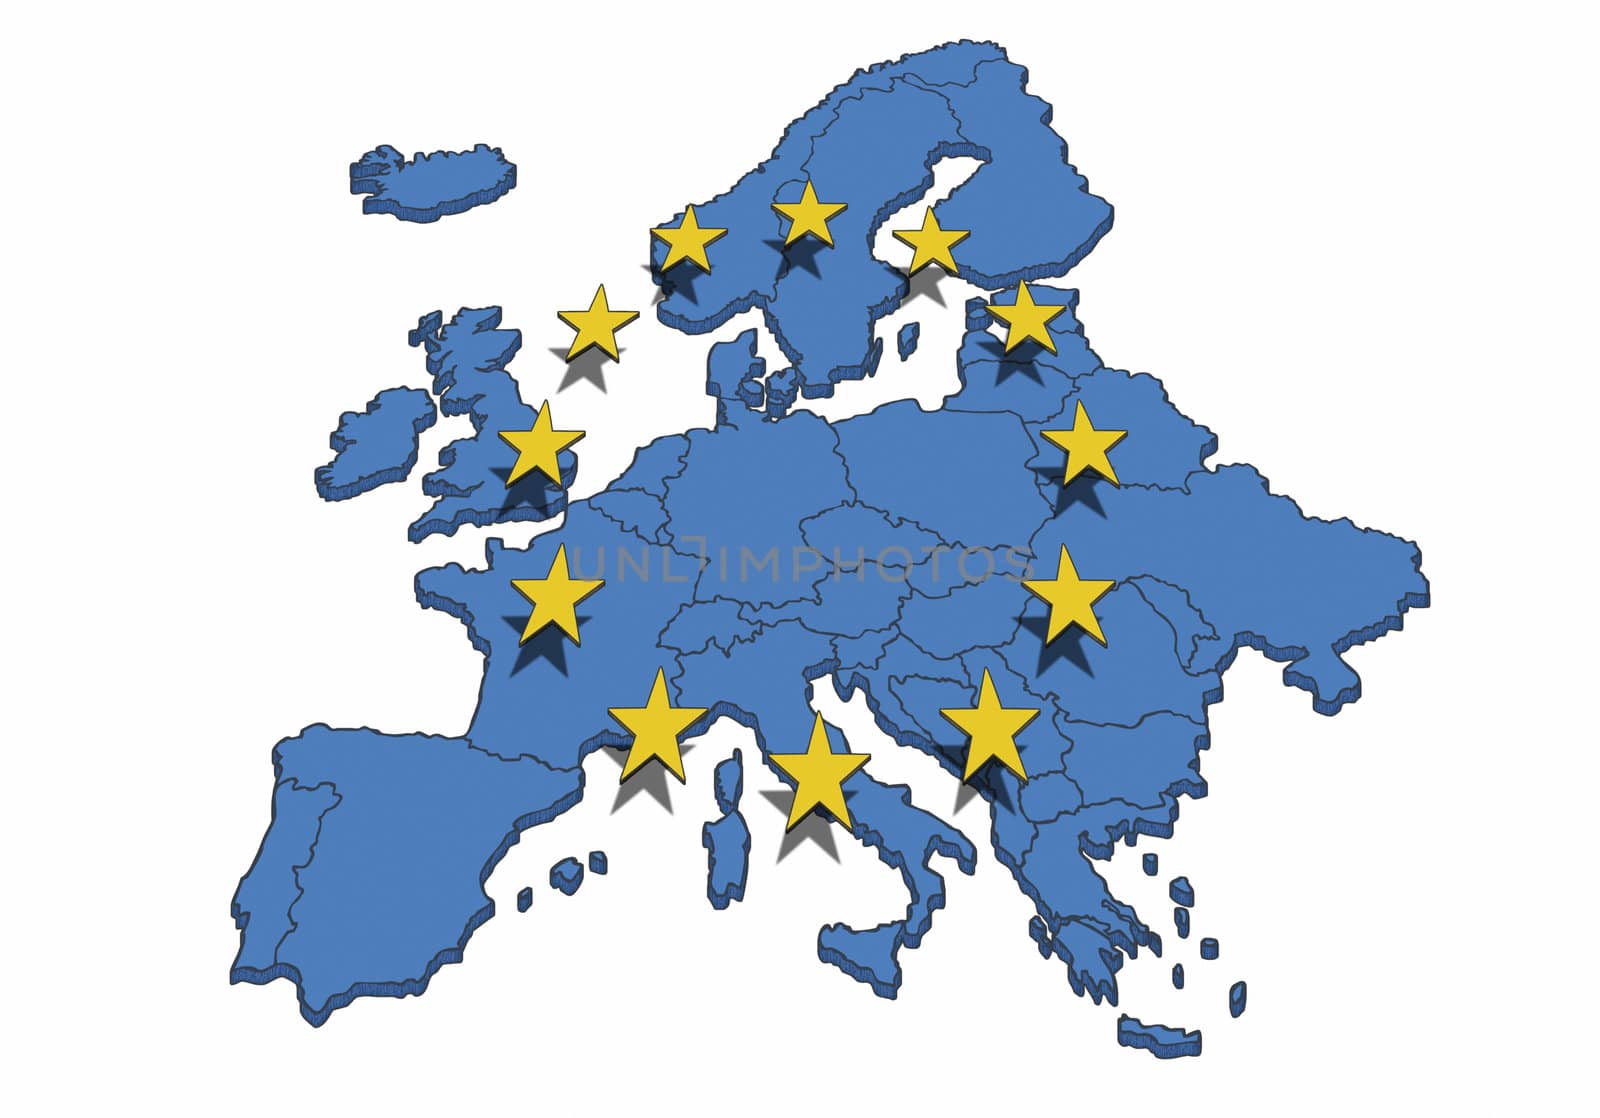 European Union by Alvinge